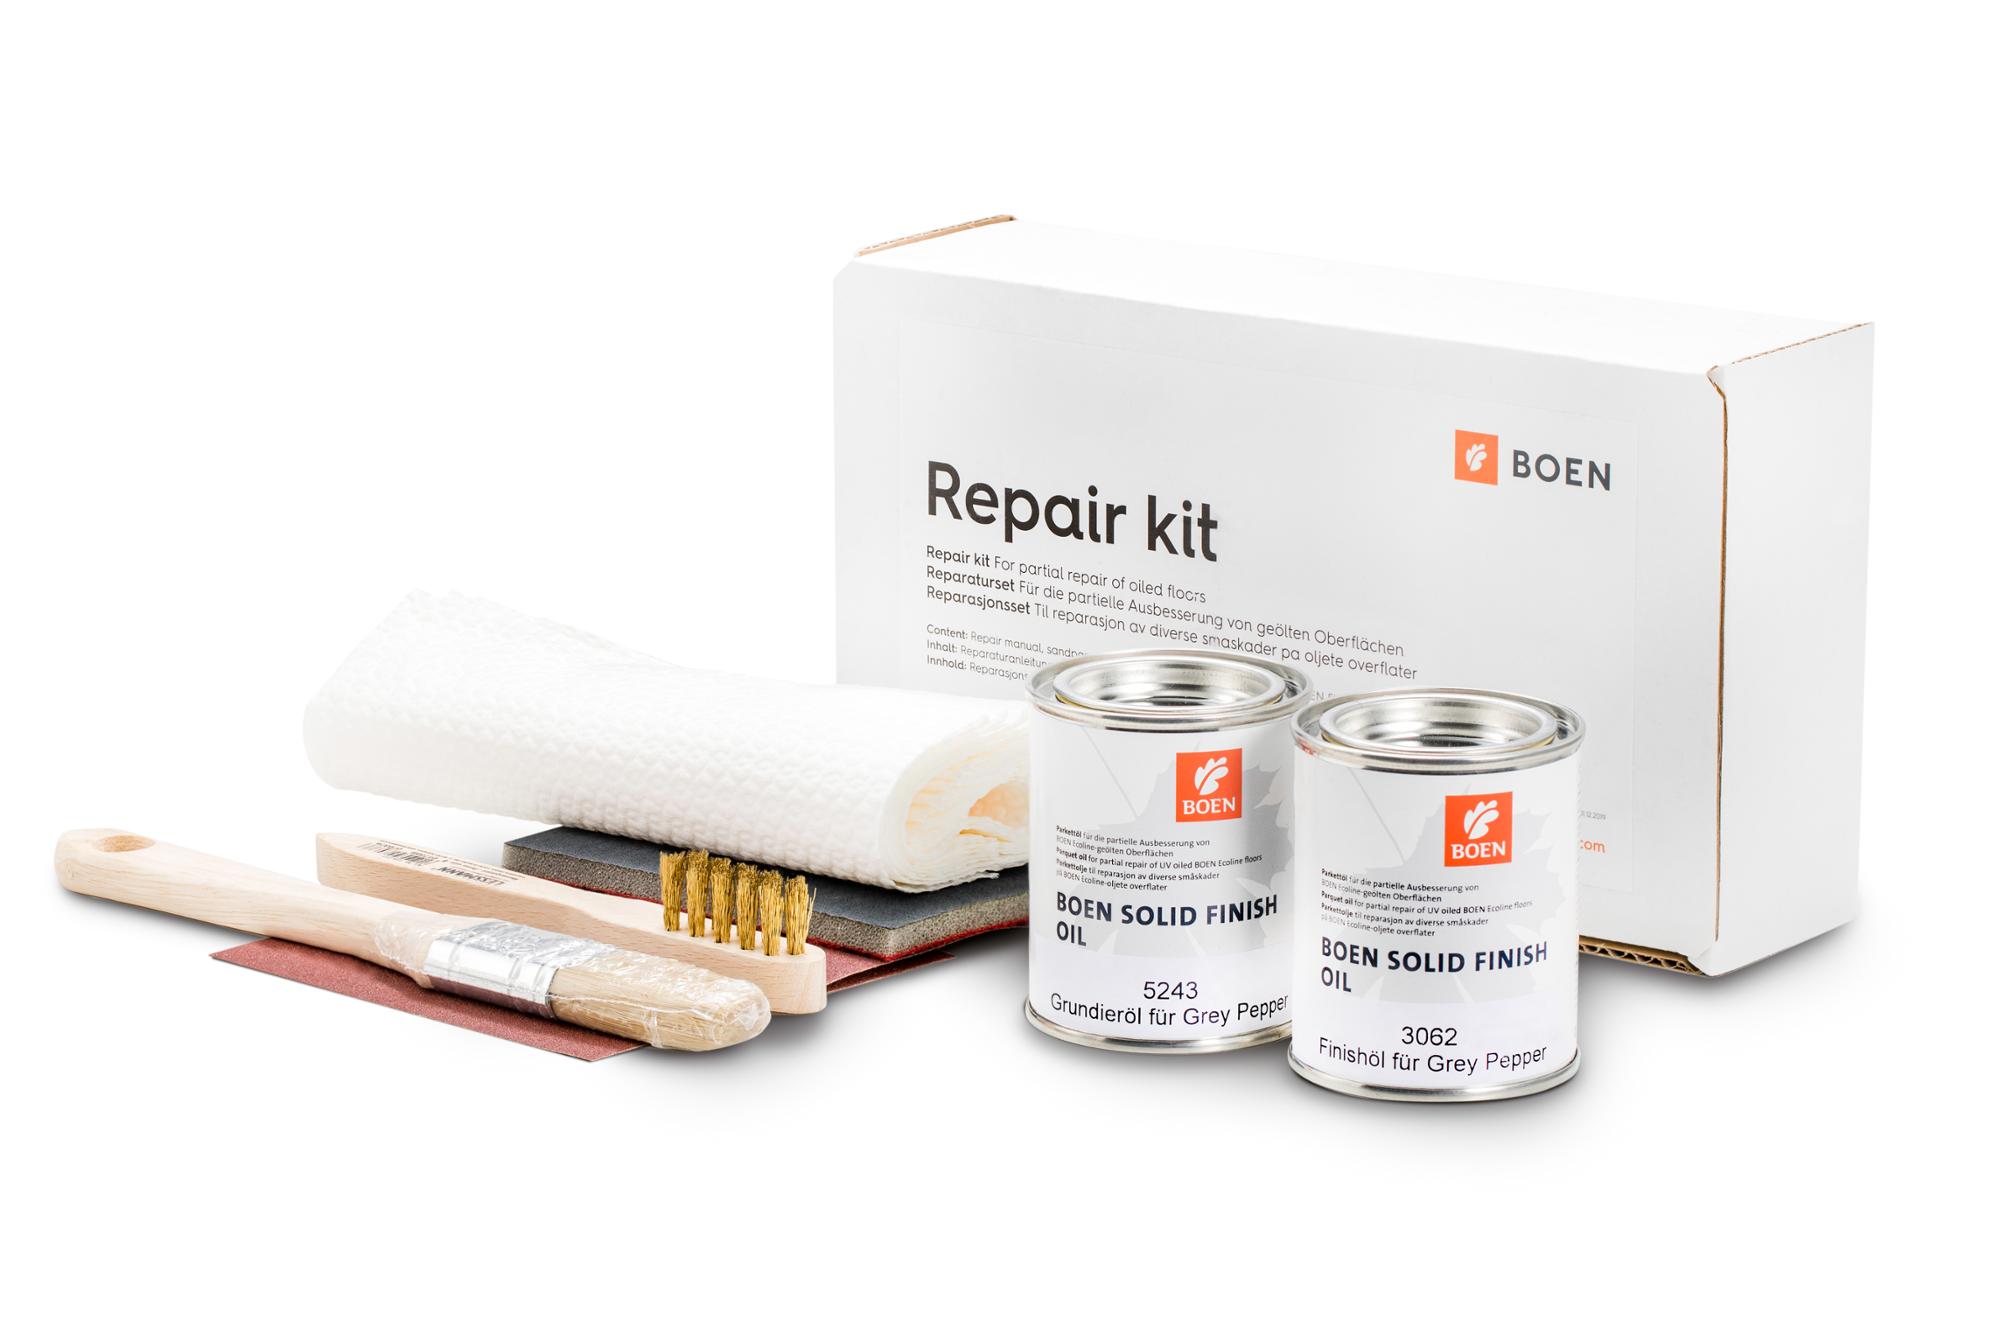 BOEN Repair kit for Oak Grey Pepper